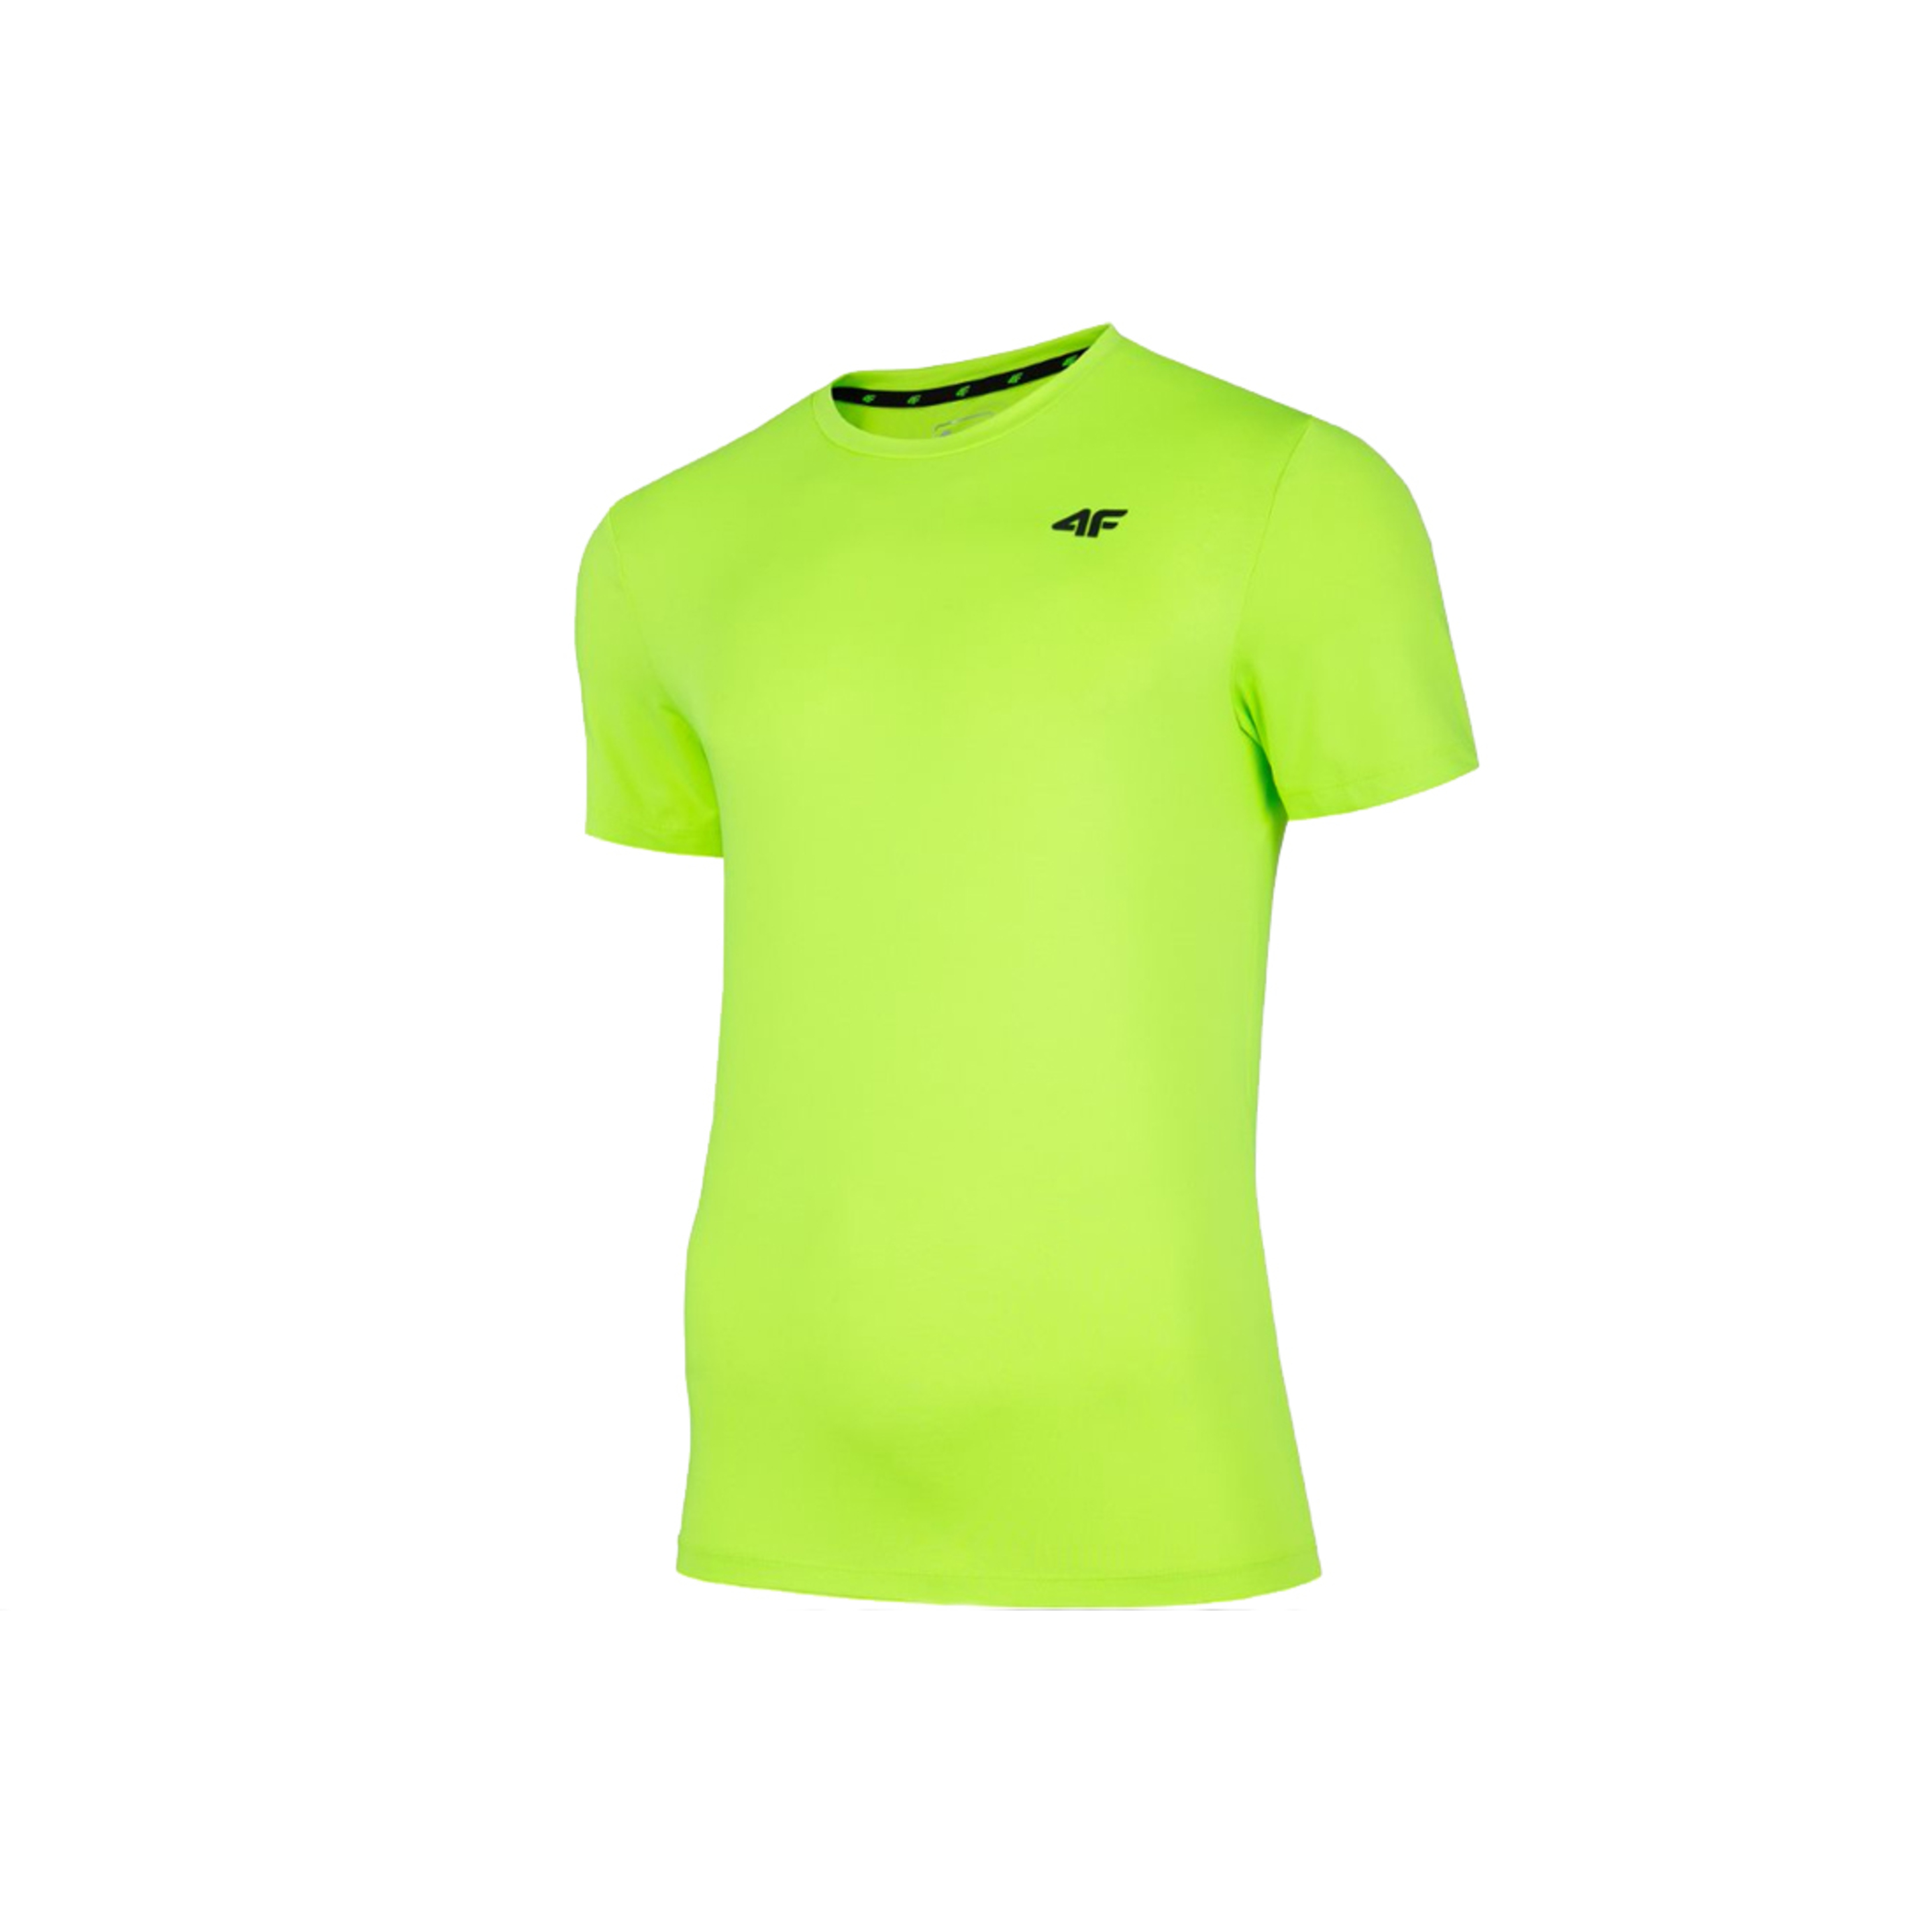 Camiseta 4f Clothes Nosh - verde - 